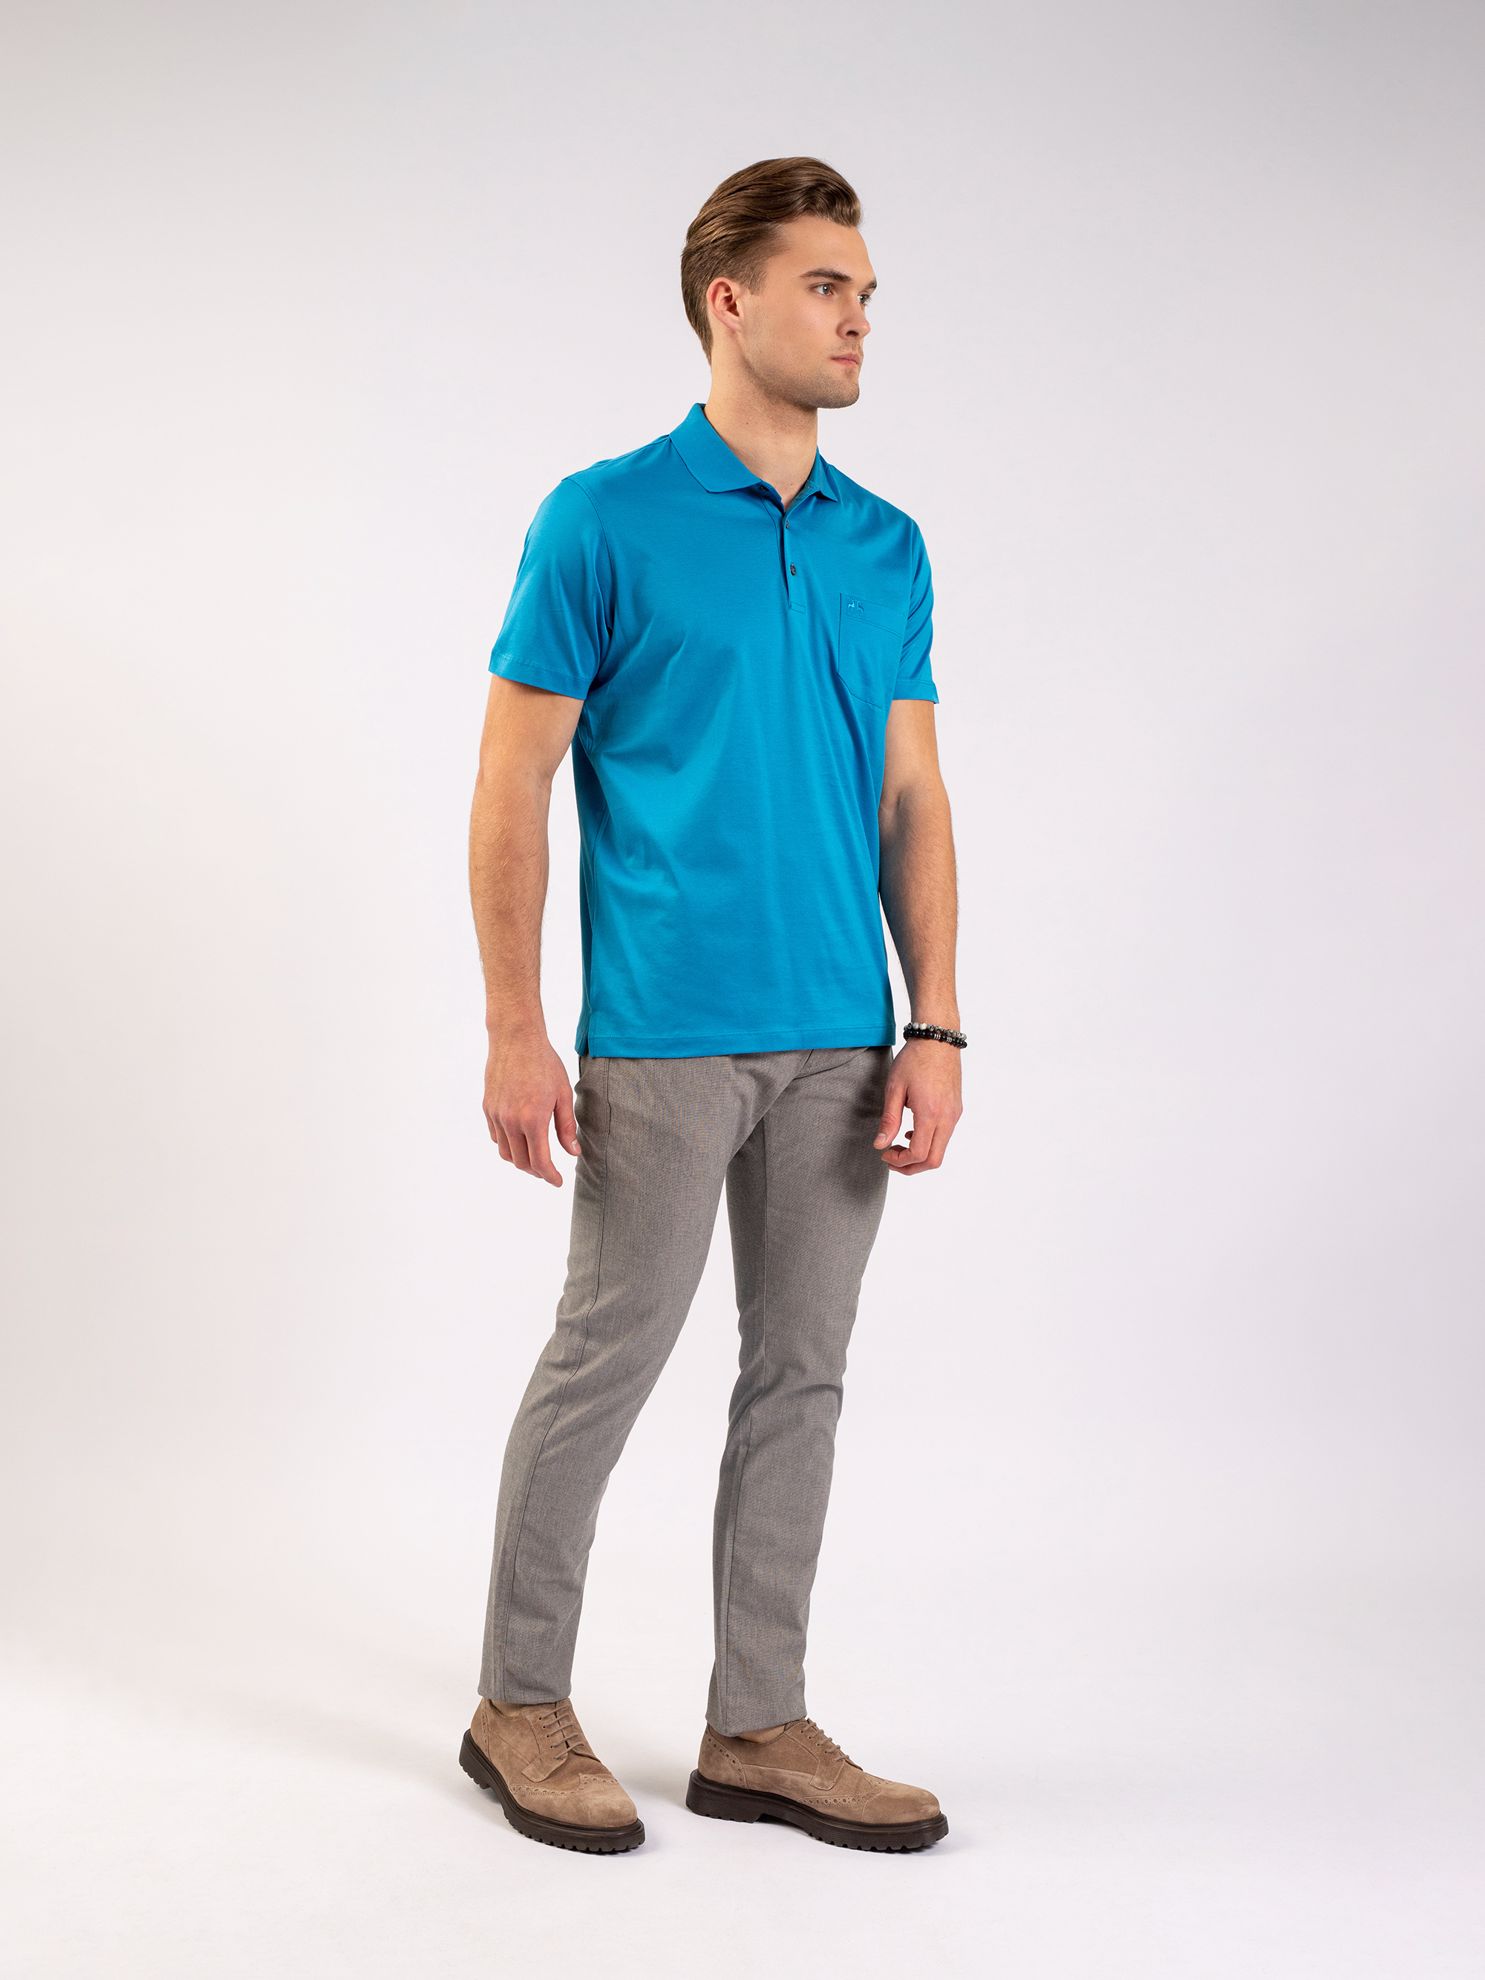 Karaca Erkek Regular Fit Polo Yaka Tişört-Koyu Mavi. ürün görseli